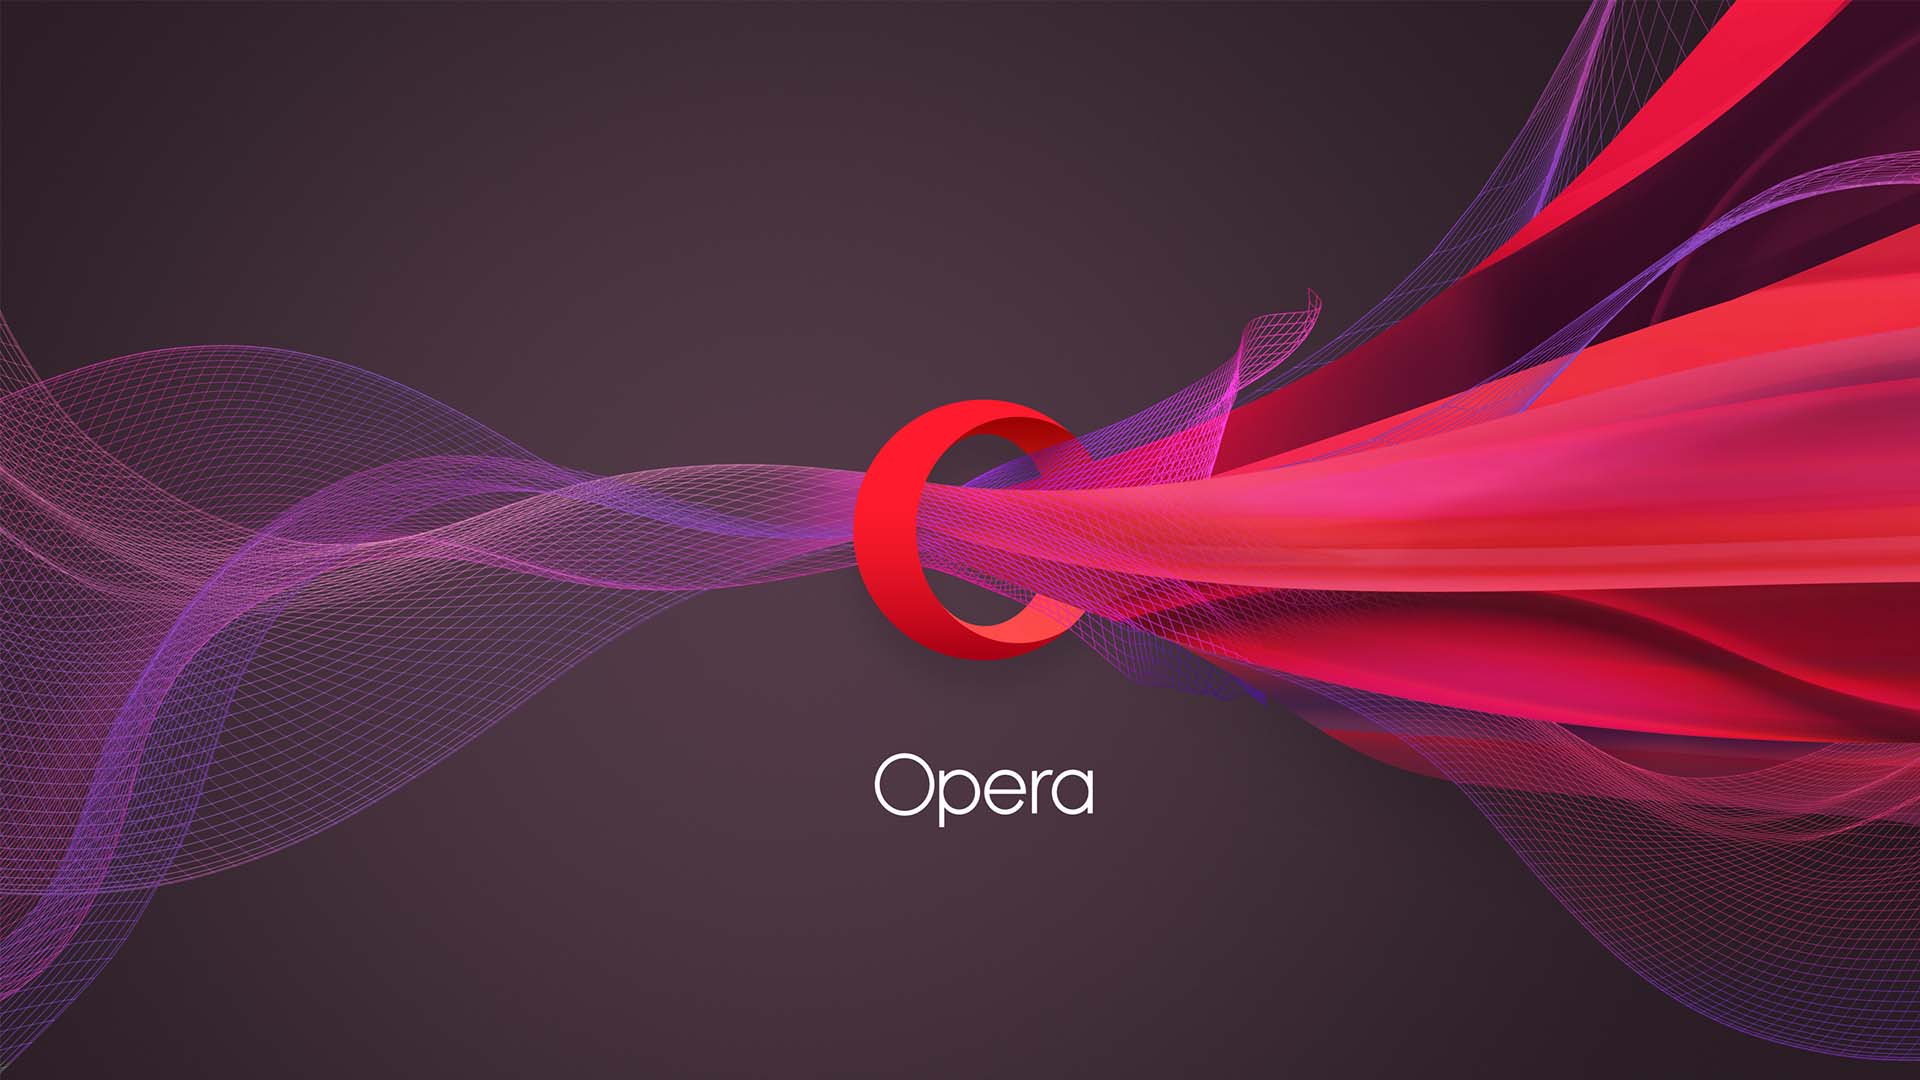 传达流畅动感体验的Opera浏览器品牌VI视觉形象识别设计